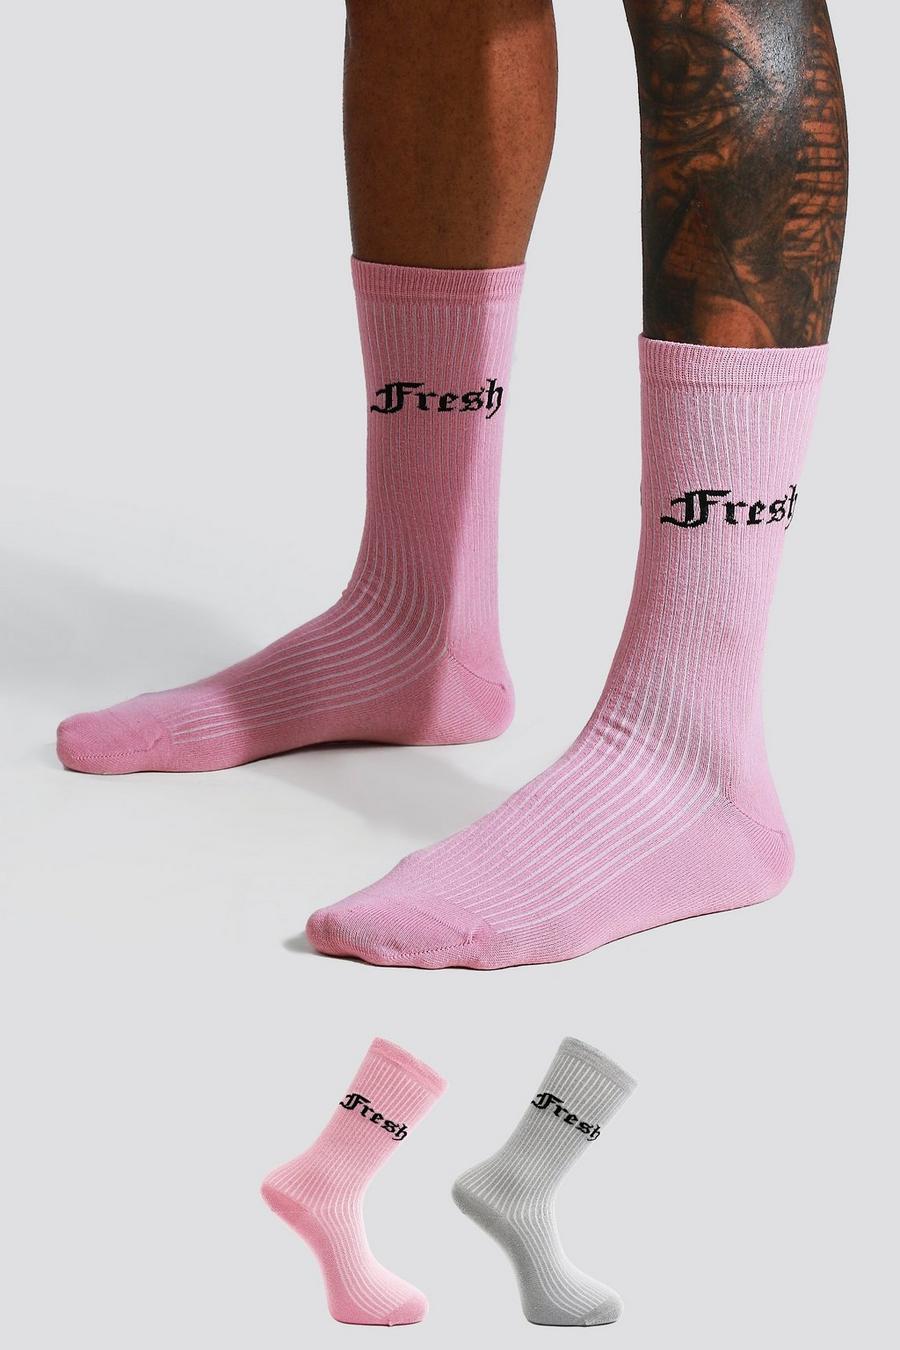 Pack de 2 pares de calcetines con eslogan Fresh, Multi image number 1